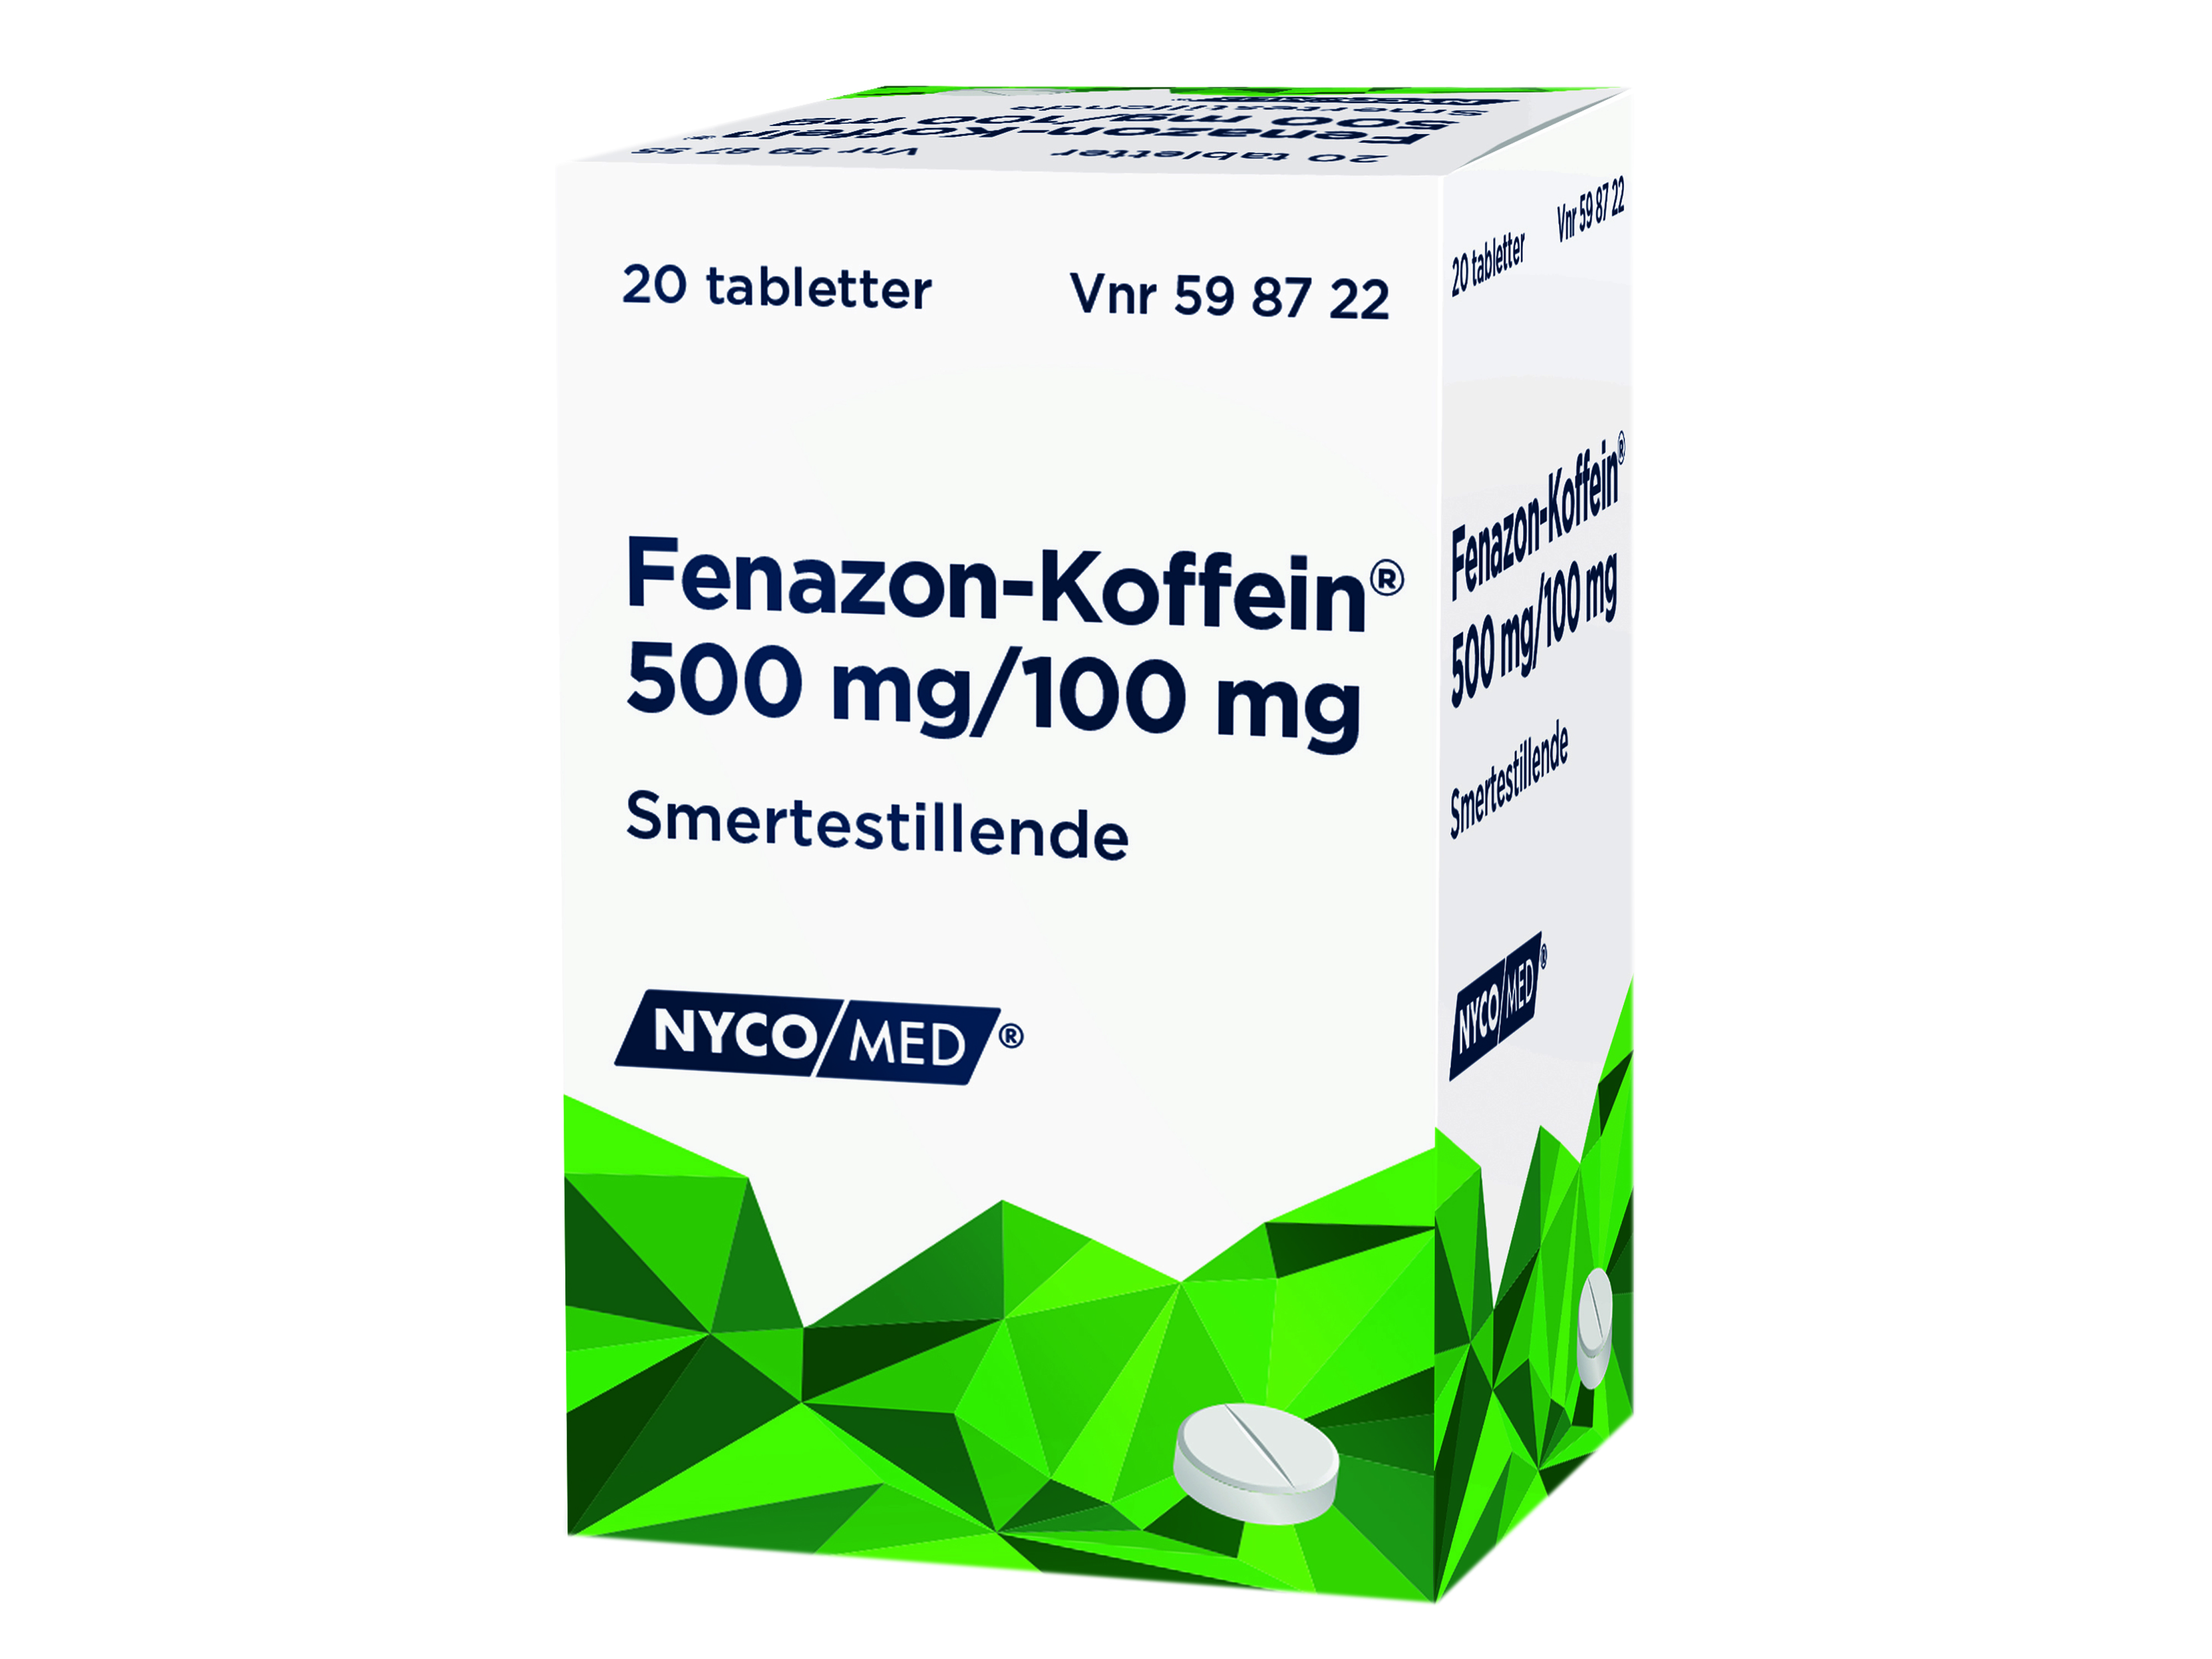 Fenazon-Koffein Tabletter, 20 stk. i boks